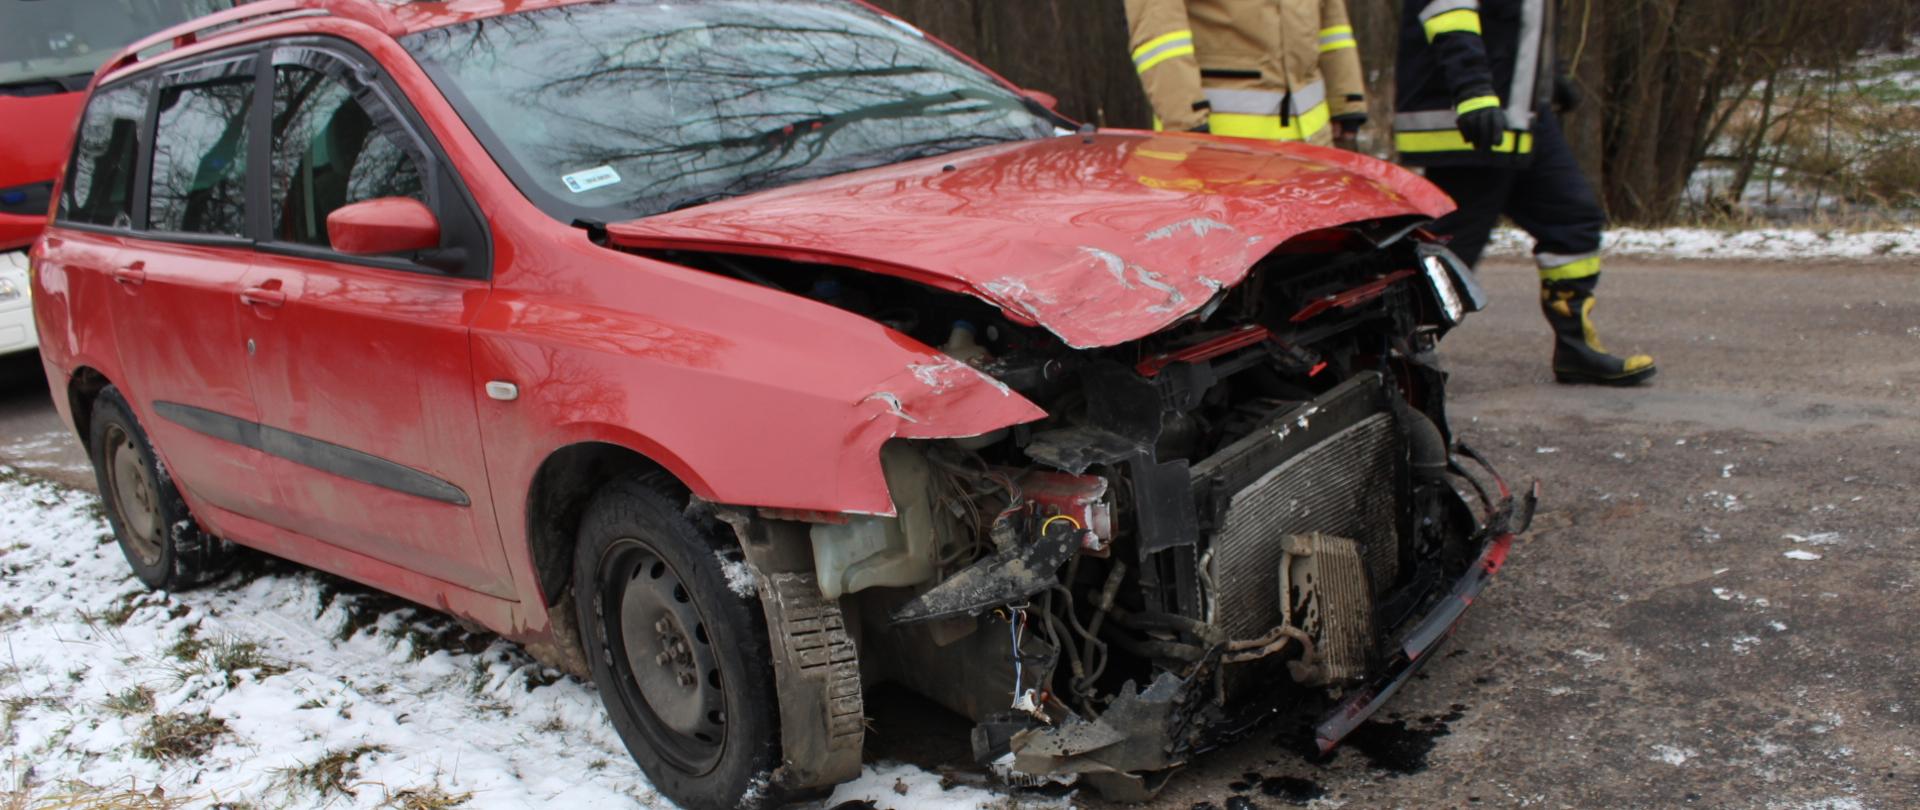 zdjęcie przedstawia rozbity przód samochodu osobowego koloru czerwonego